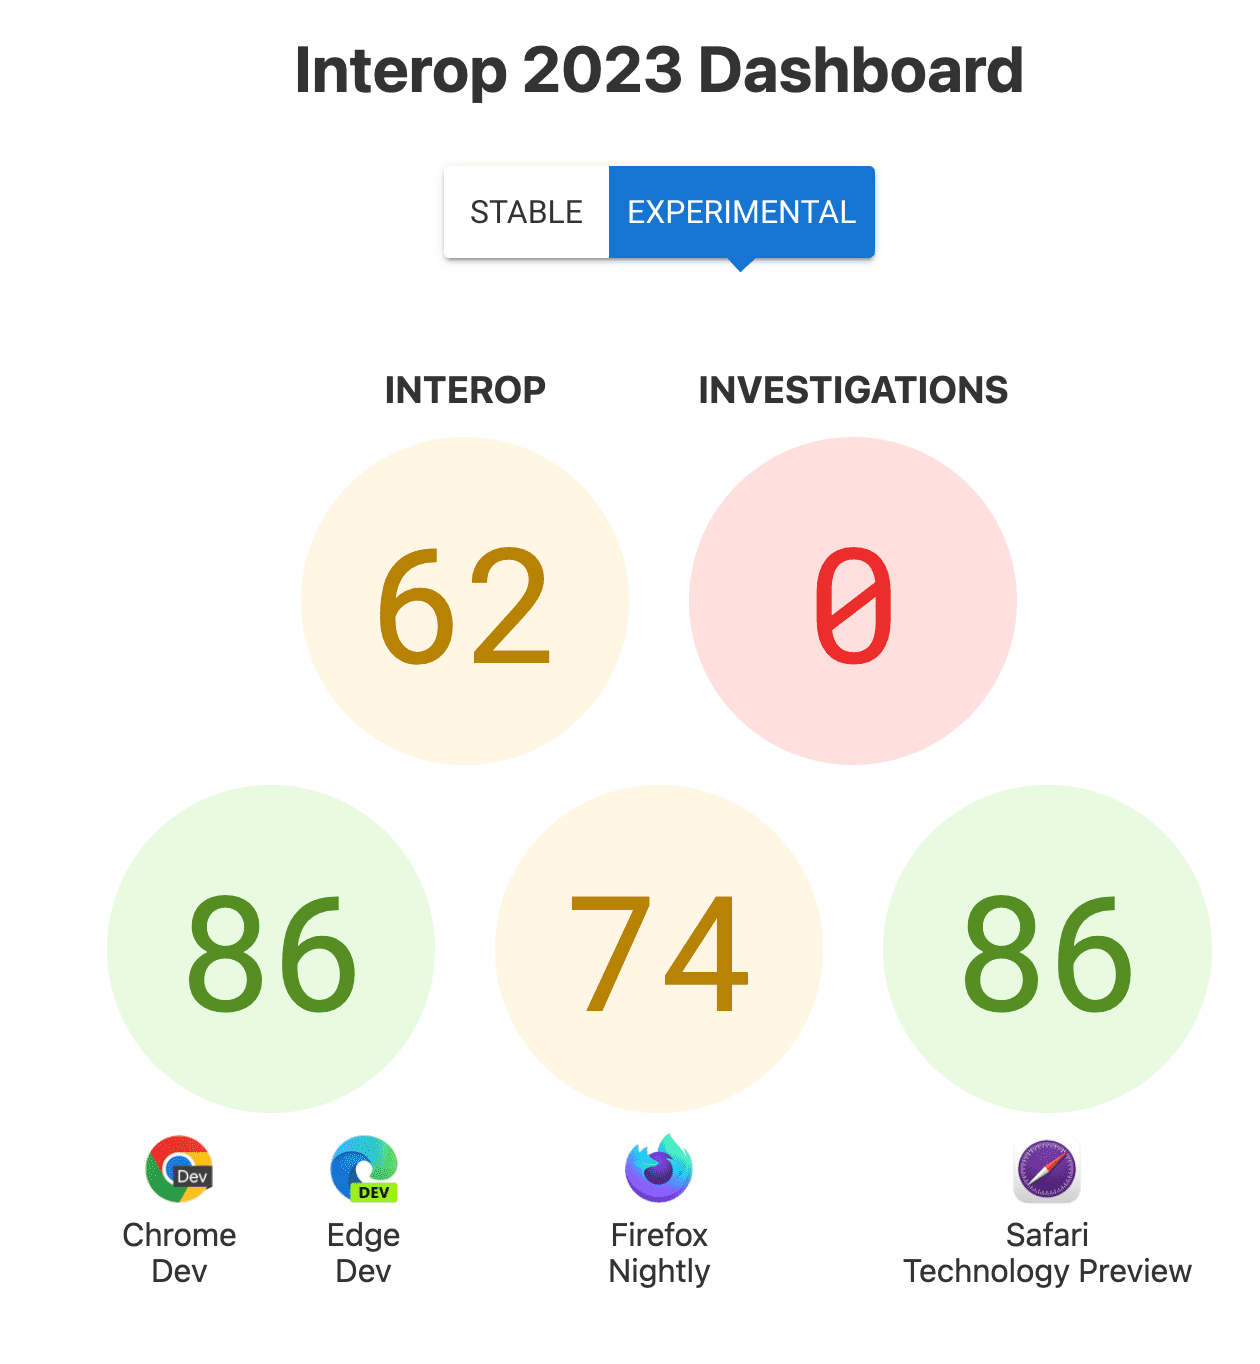 امتیازات برای Interop به طور کلی: 62، بررسی ها: 0، و امتیازات هر مرورگر - 86 برای Chrome و Edge، 74 برای فایرفاکس، 86 برای پیش نمایش فناوری Safari.